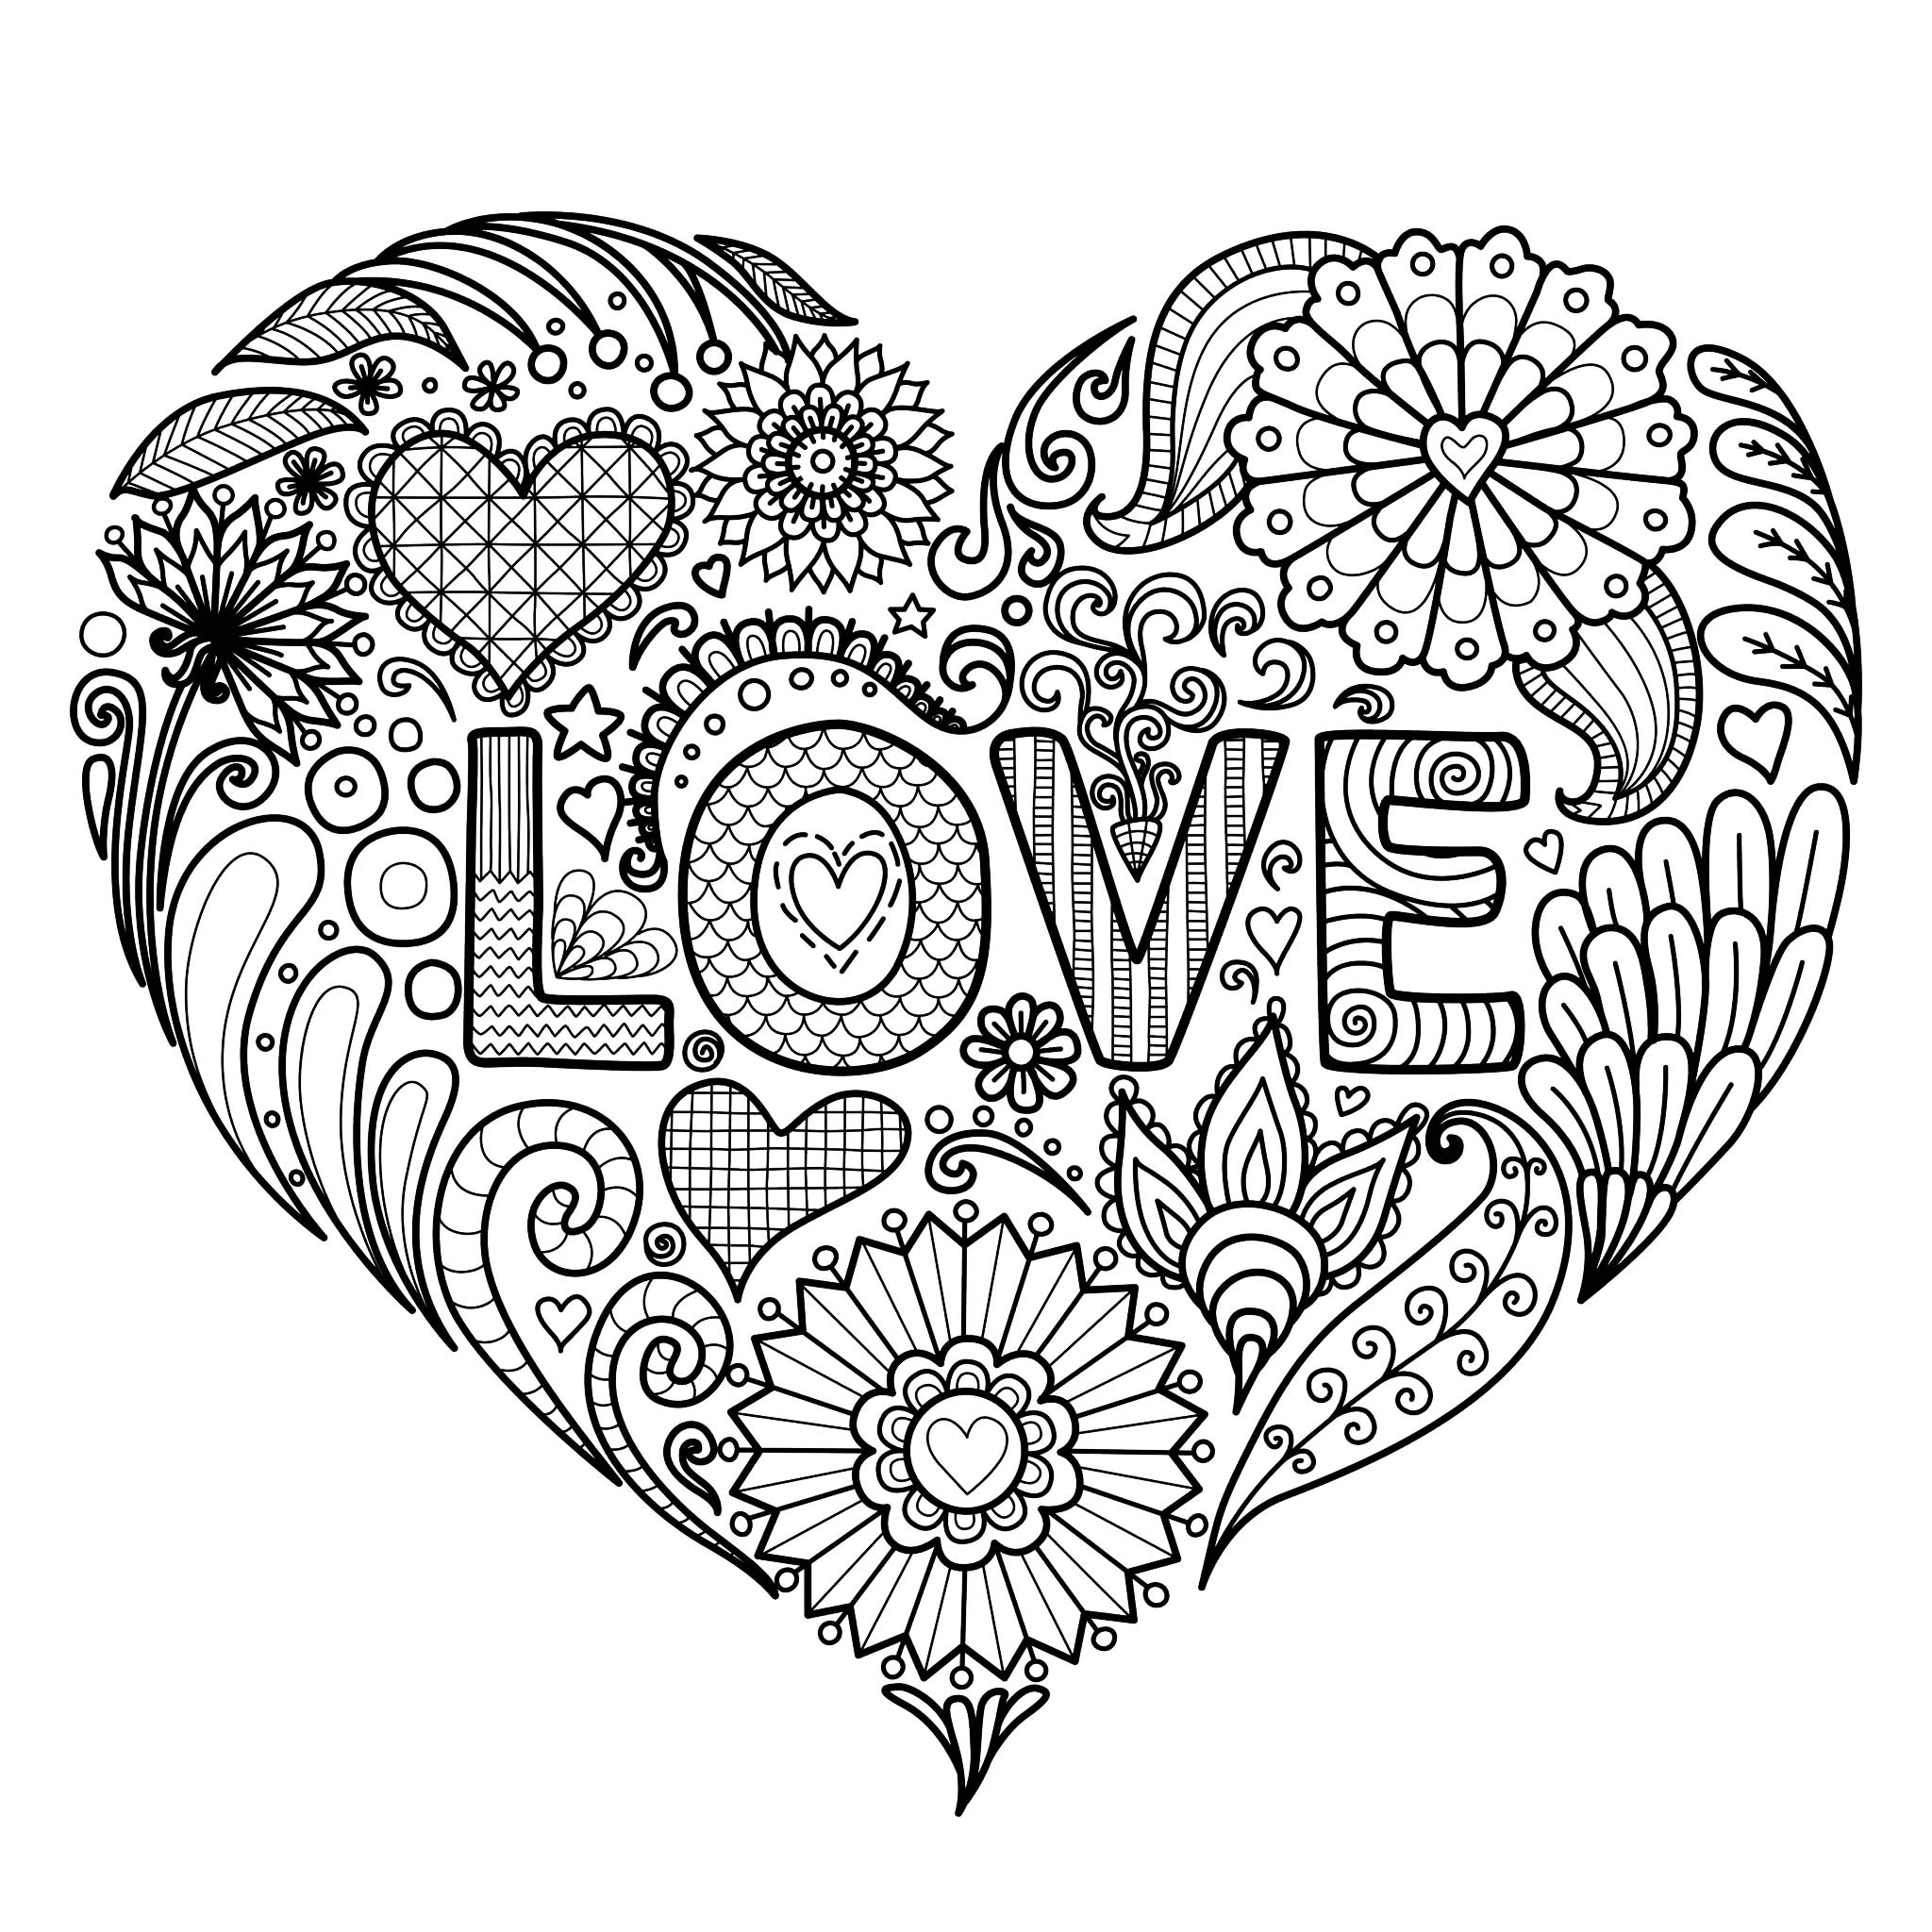 Ein schönes Herz mit Blumen und dem Text 'LOVE' zum Ausmalen, Künstler : Bimdeedee   Quelle : 123rf